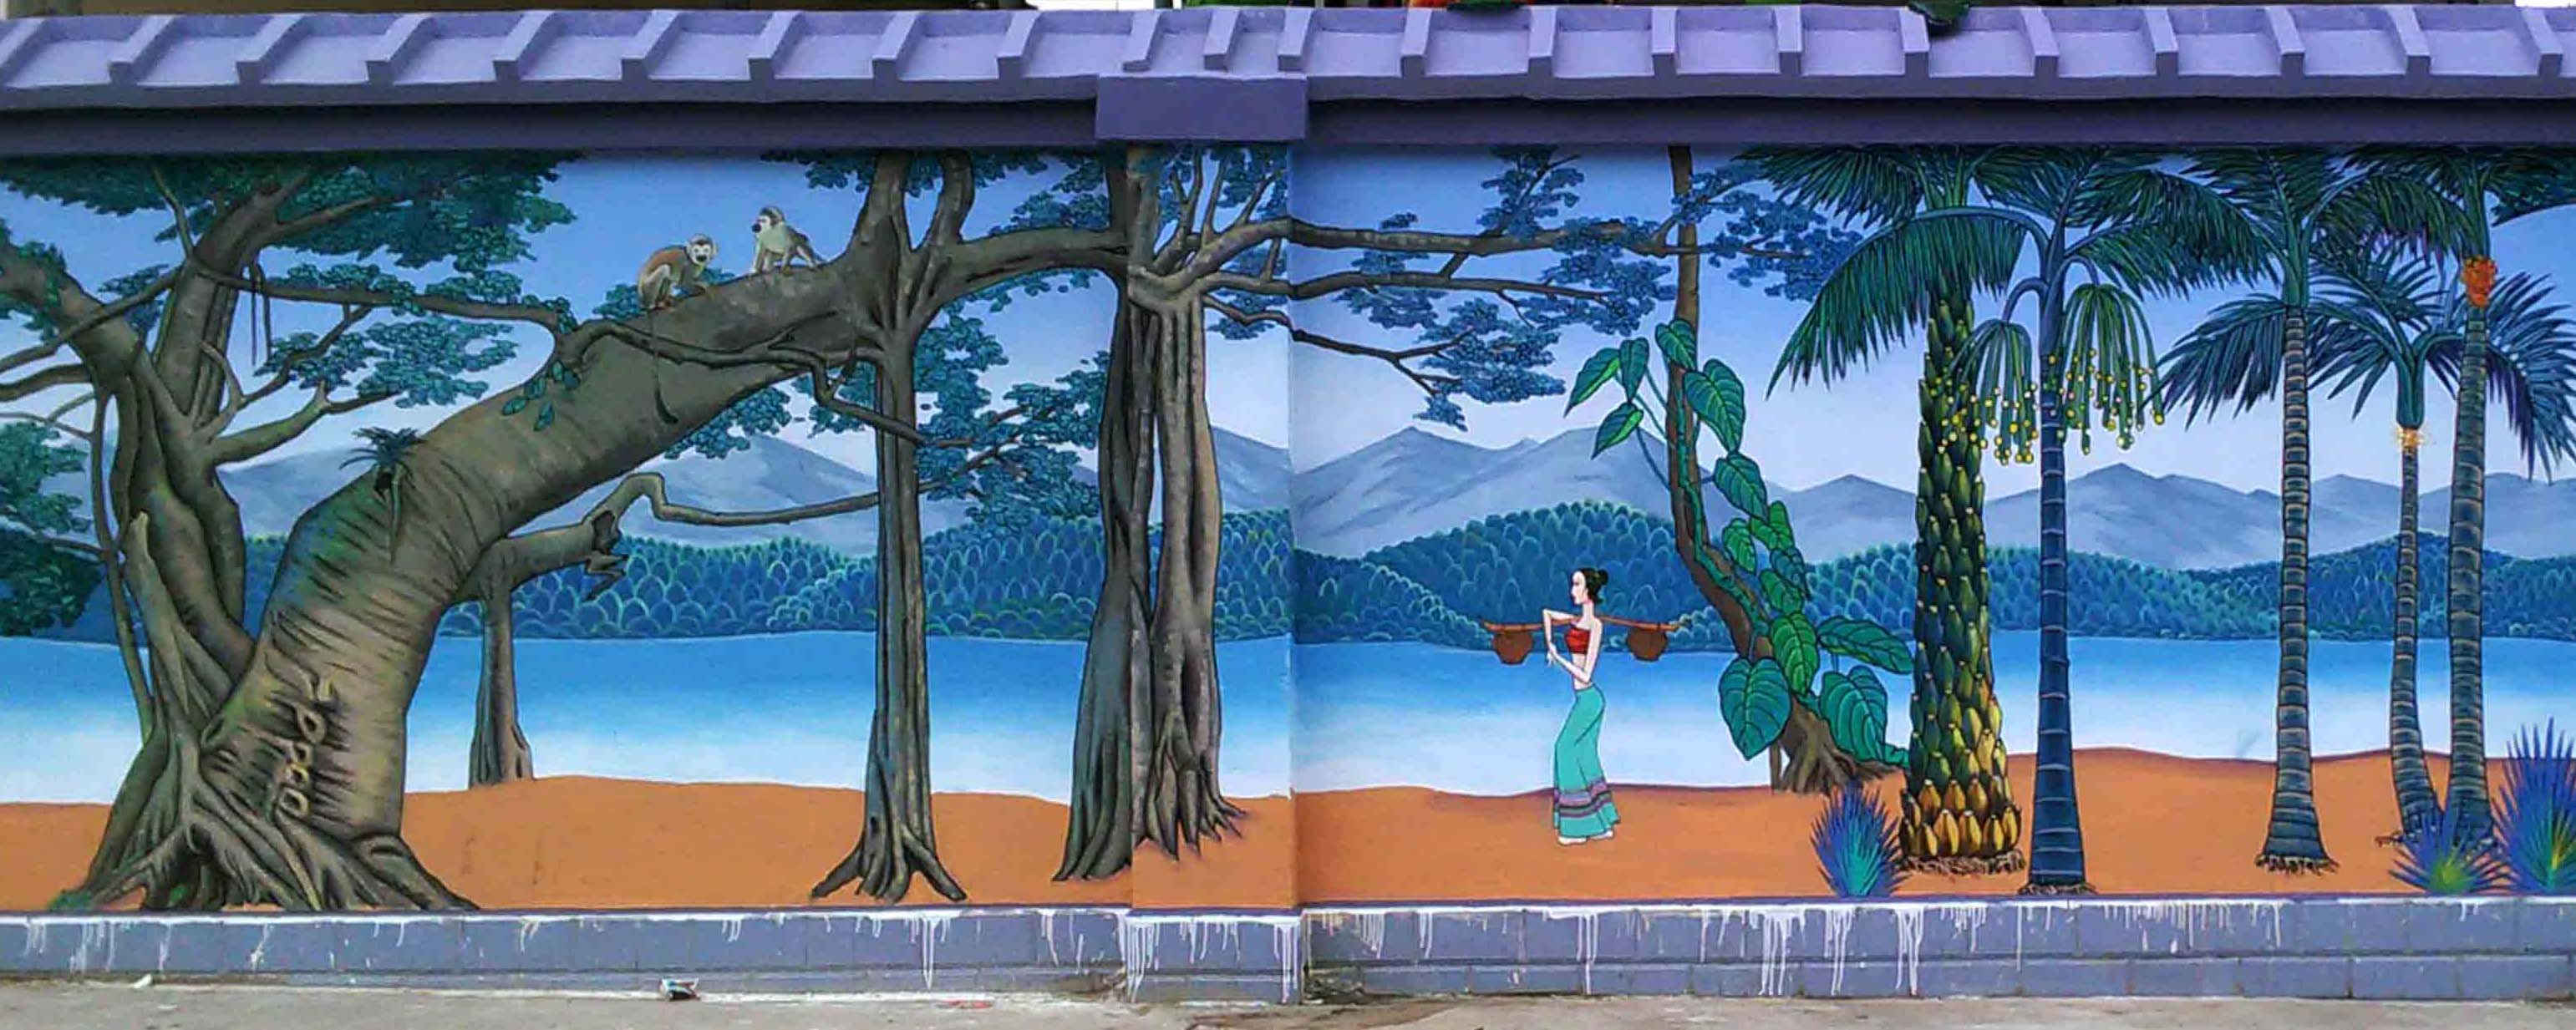 云南阿特文化传播公司的彩绘壁画超简单